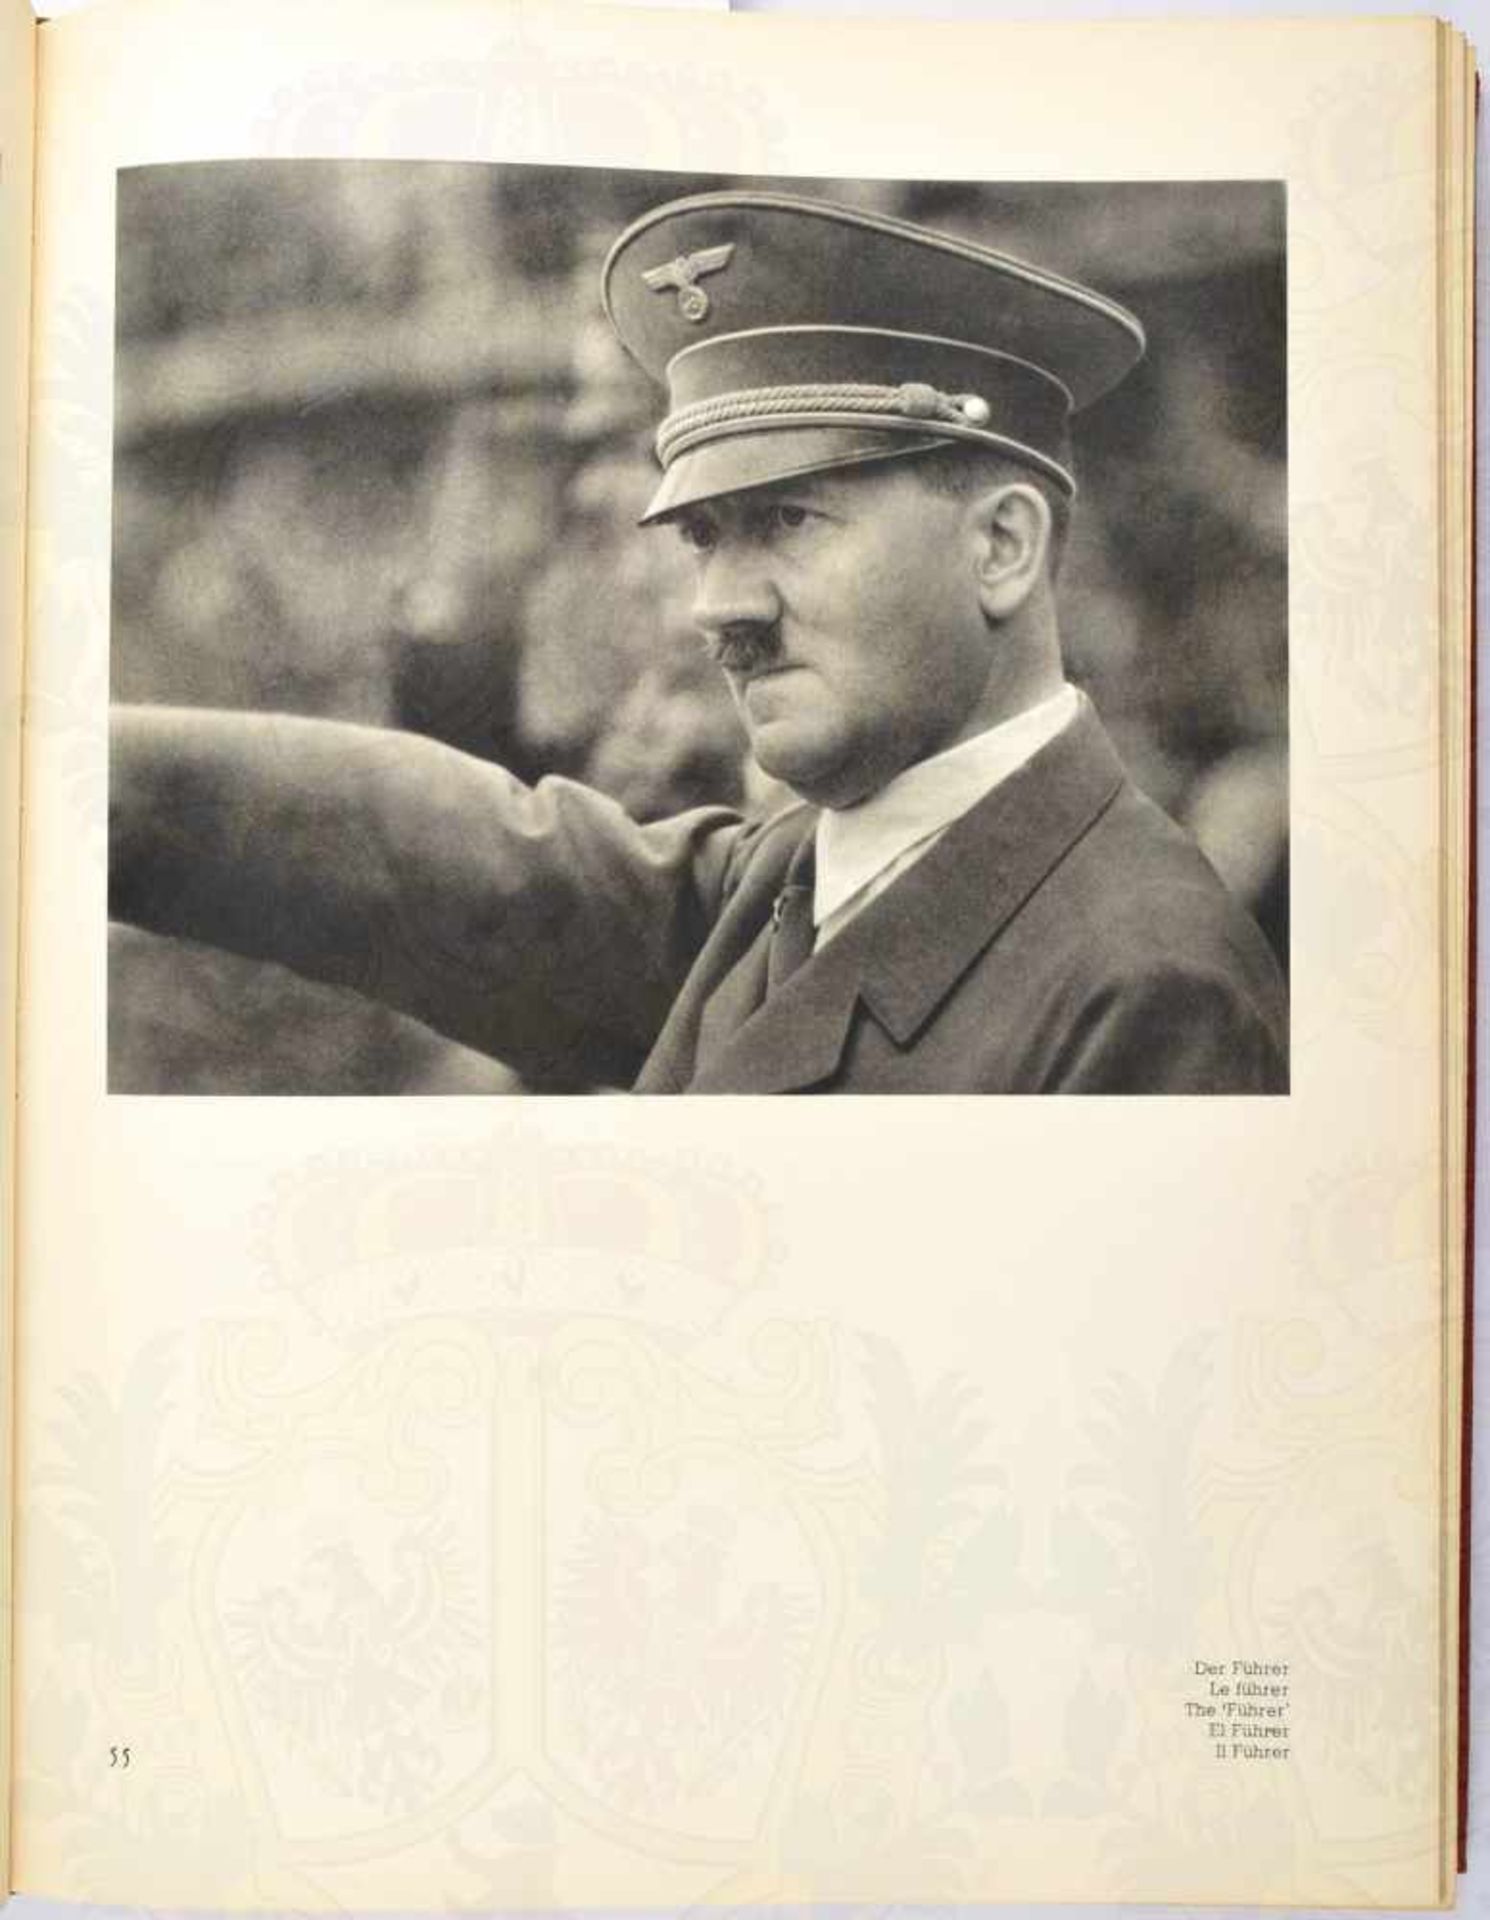 SCHÖNHEIT IM OLYMPISCHEN KAMPF, Leni Riefenstahl, Berlin 1937, 280 S., (S. 117 u.118 fehlen), - Bild 2 aus 2